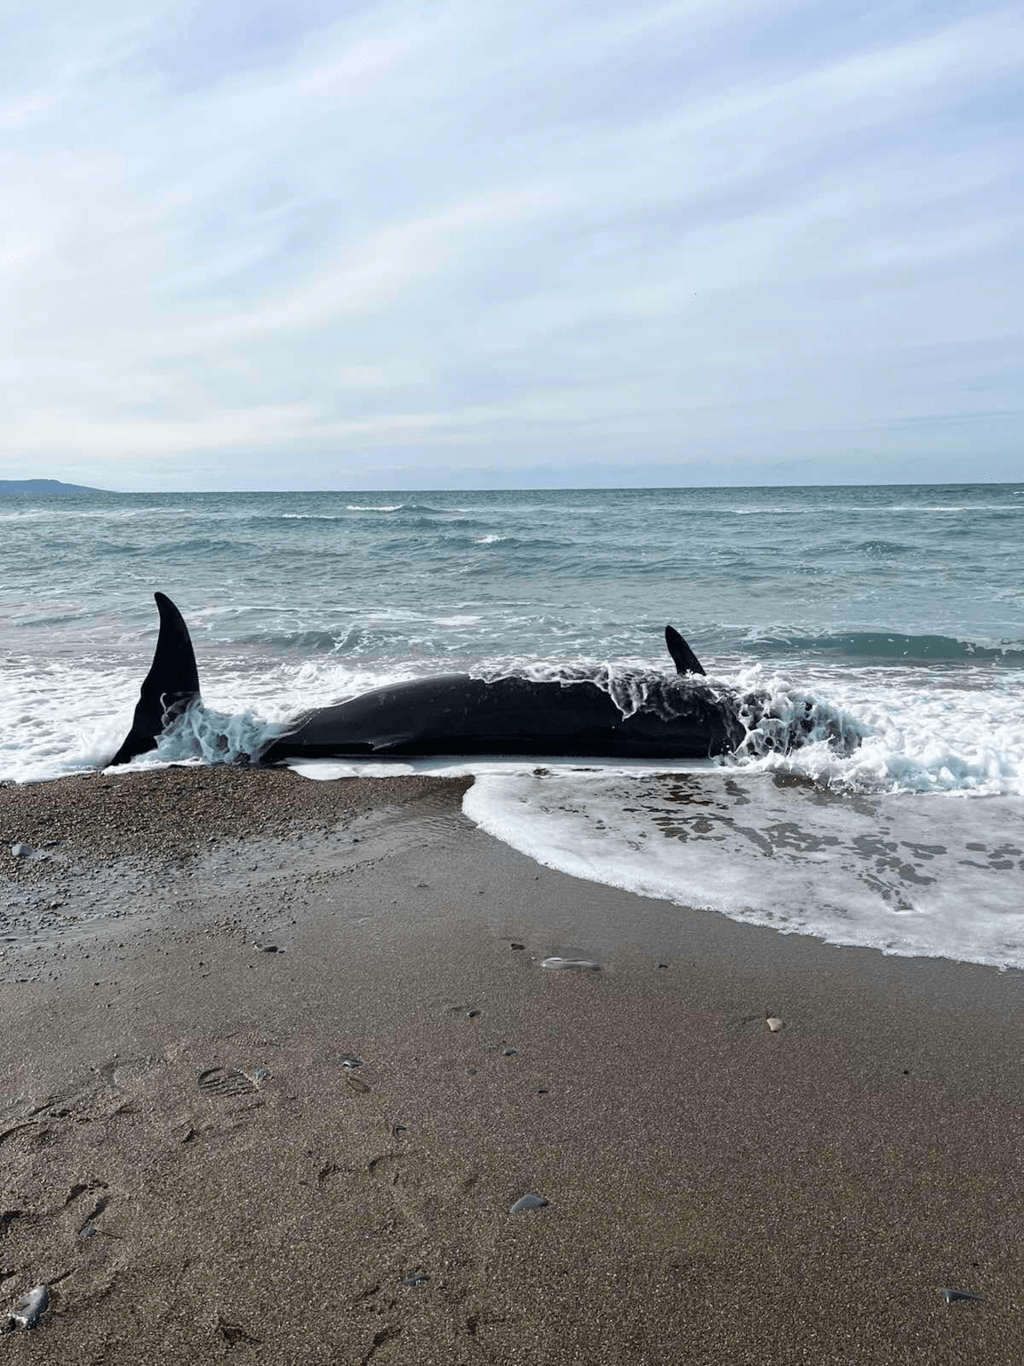 這些鯨魚是在塞浦路斯北部海岸相對較隱密區域發現的。